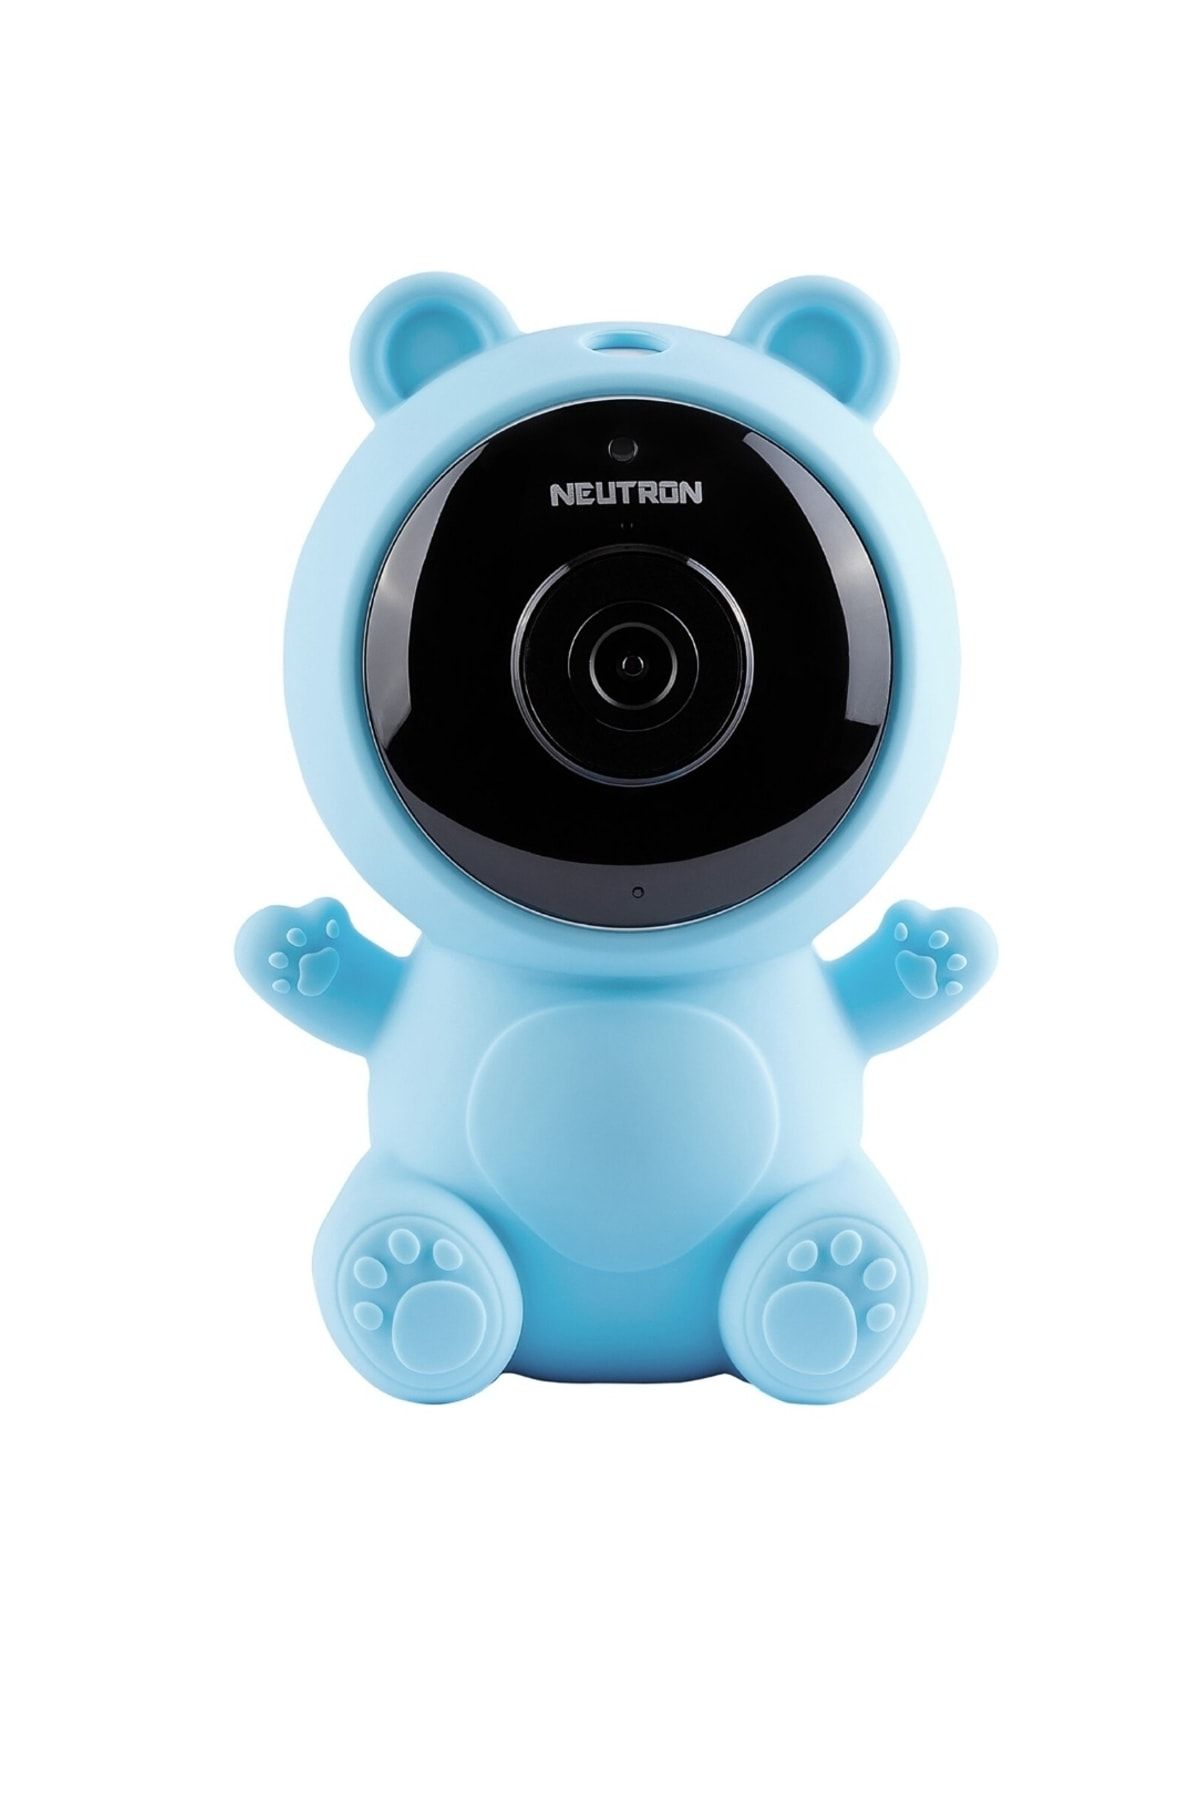 Bebbek Neutron Ninni Söyleyen Gece Görüşlü Ip Bebek Izleme Kamerası Mavi - App Ile Kontrol